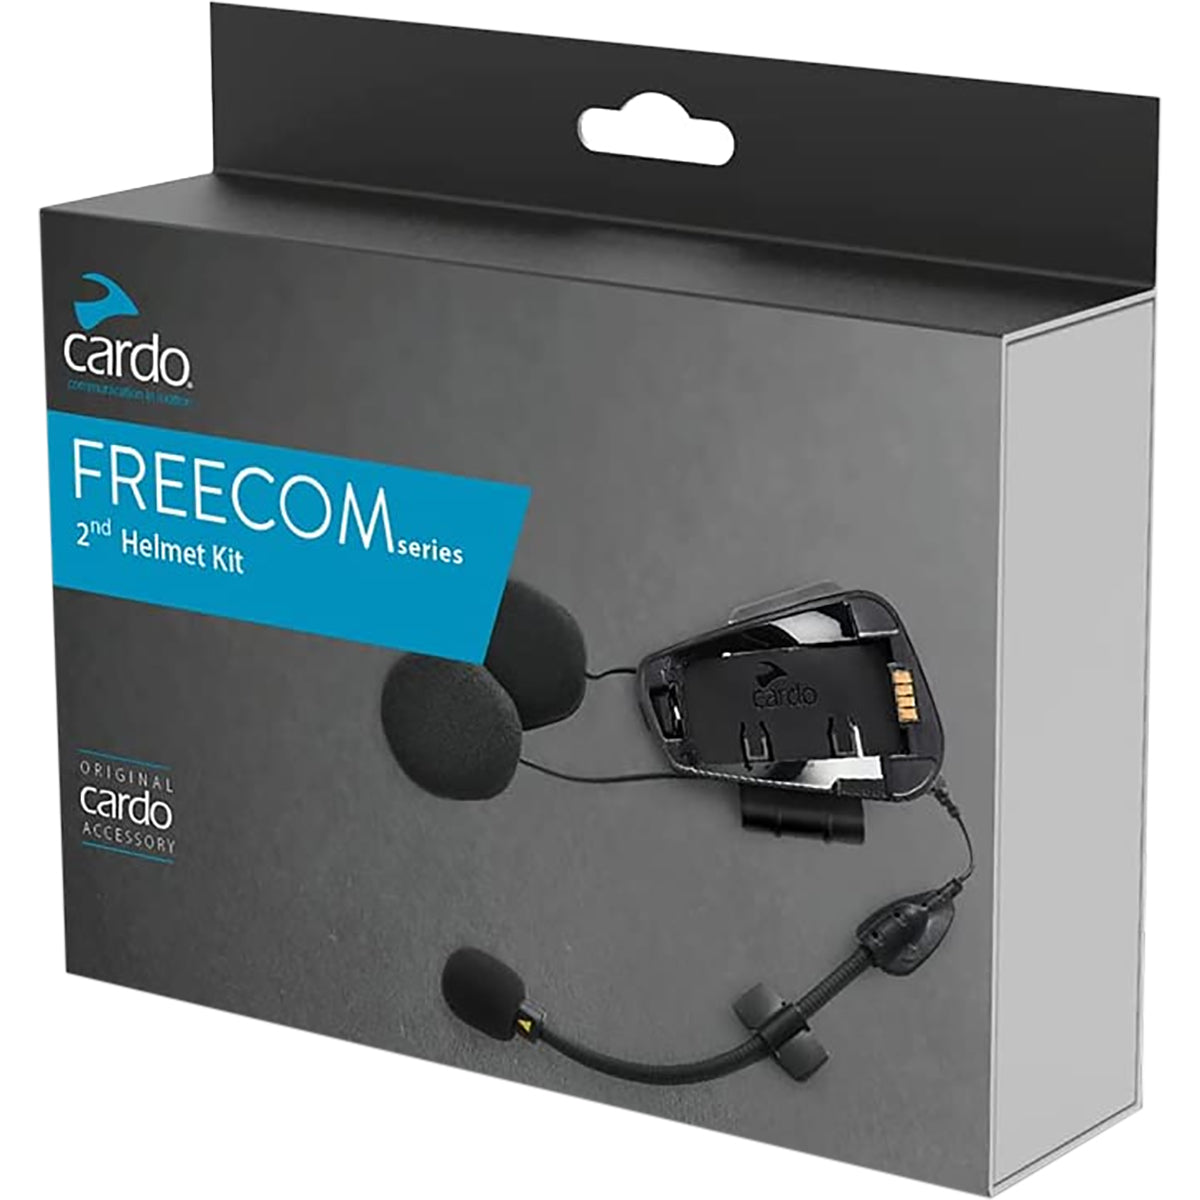 Product Review - Cardo Freecom 1+